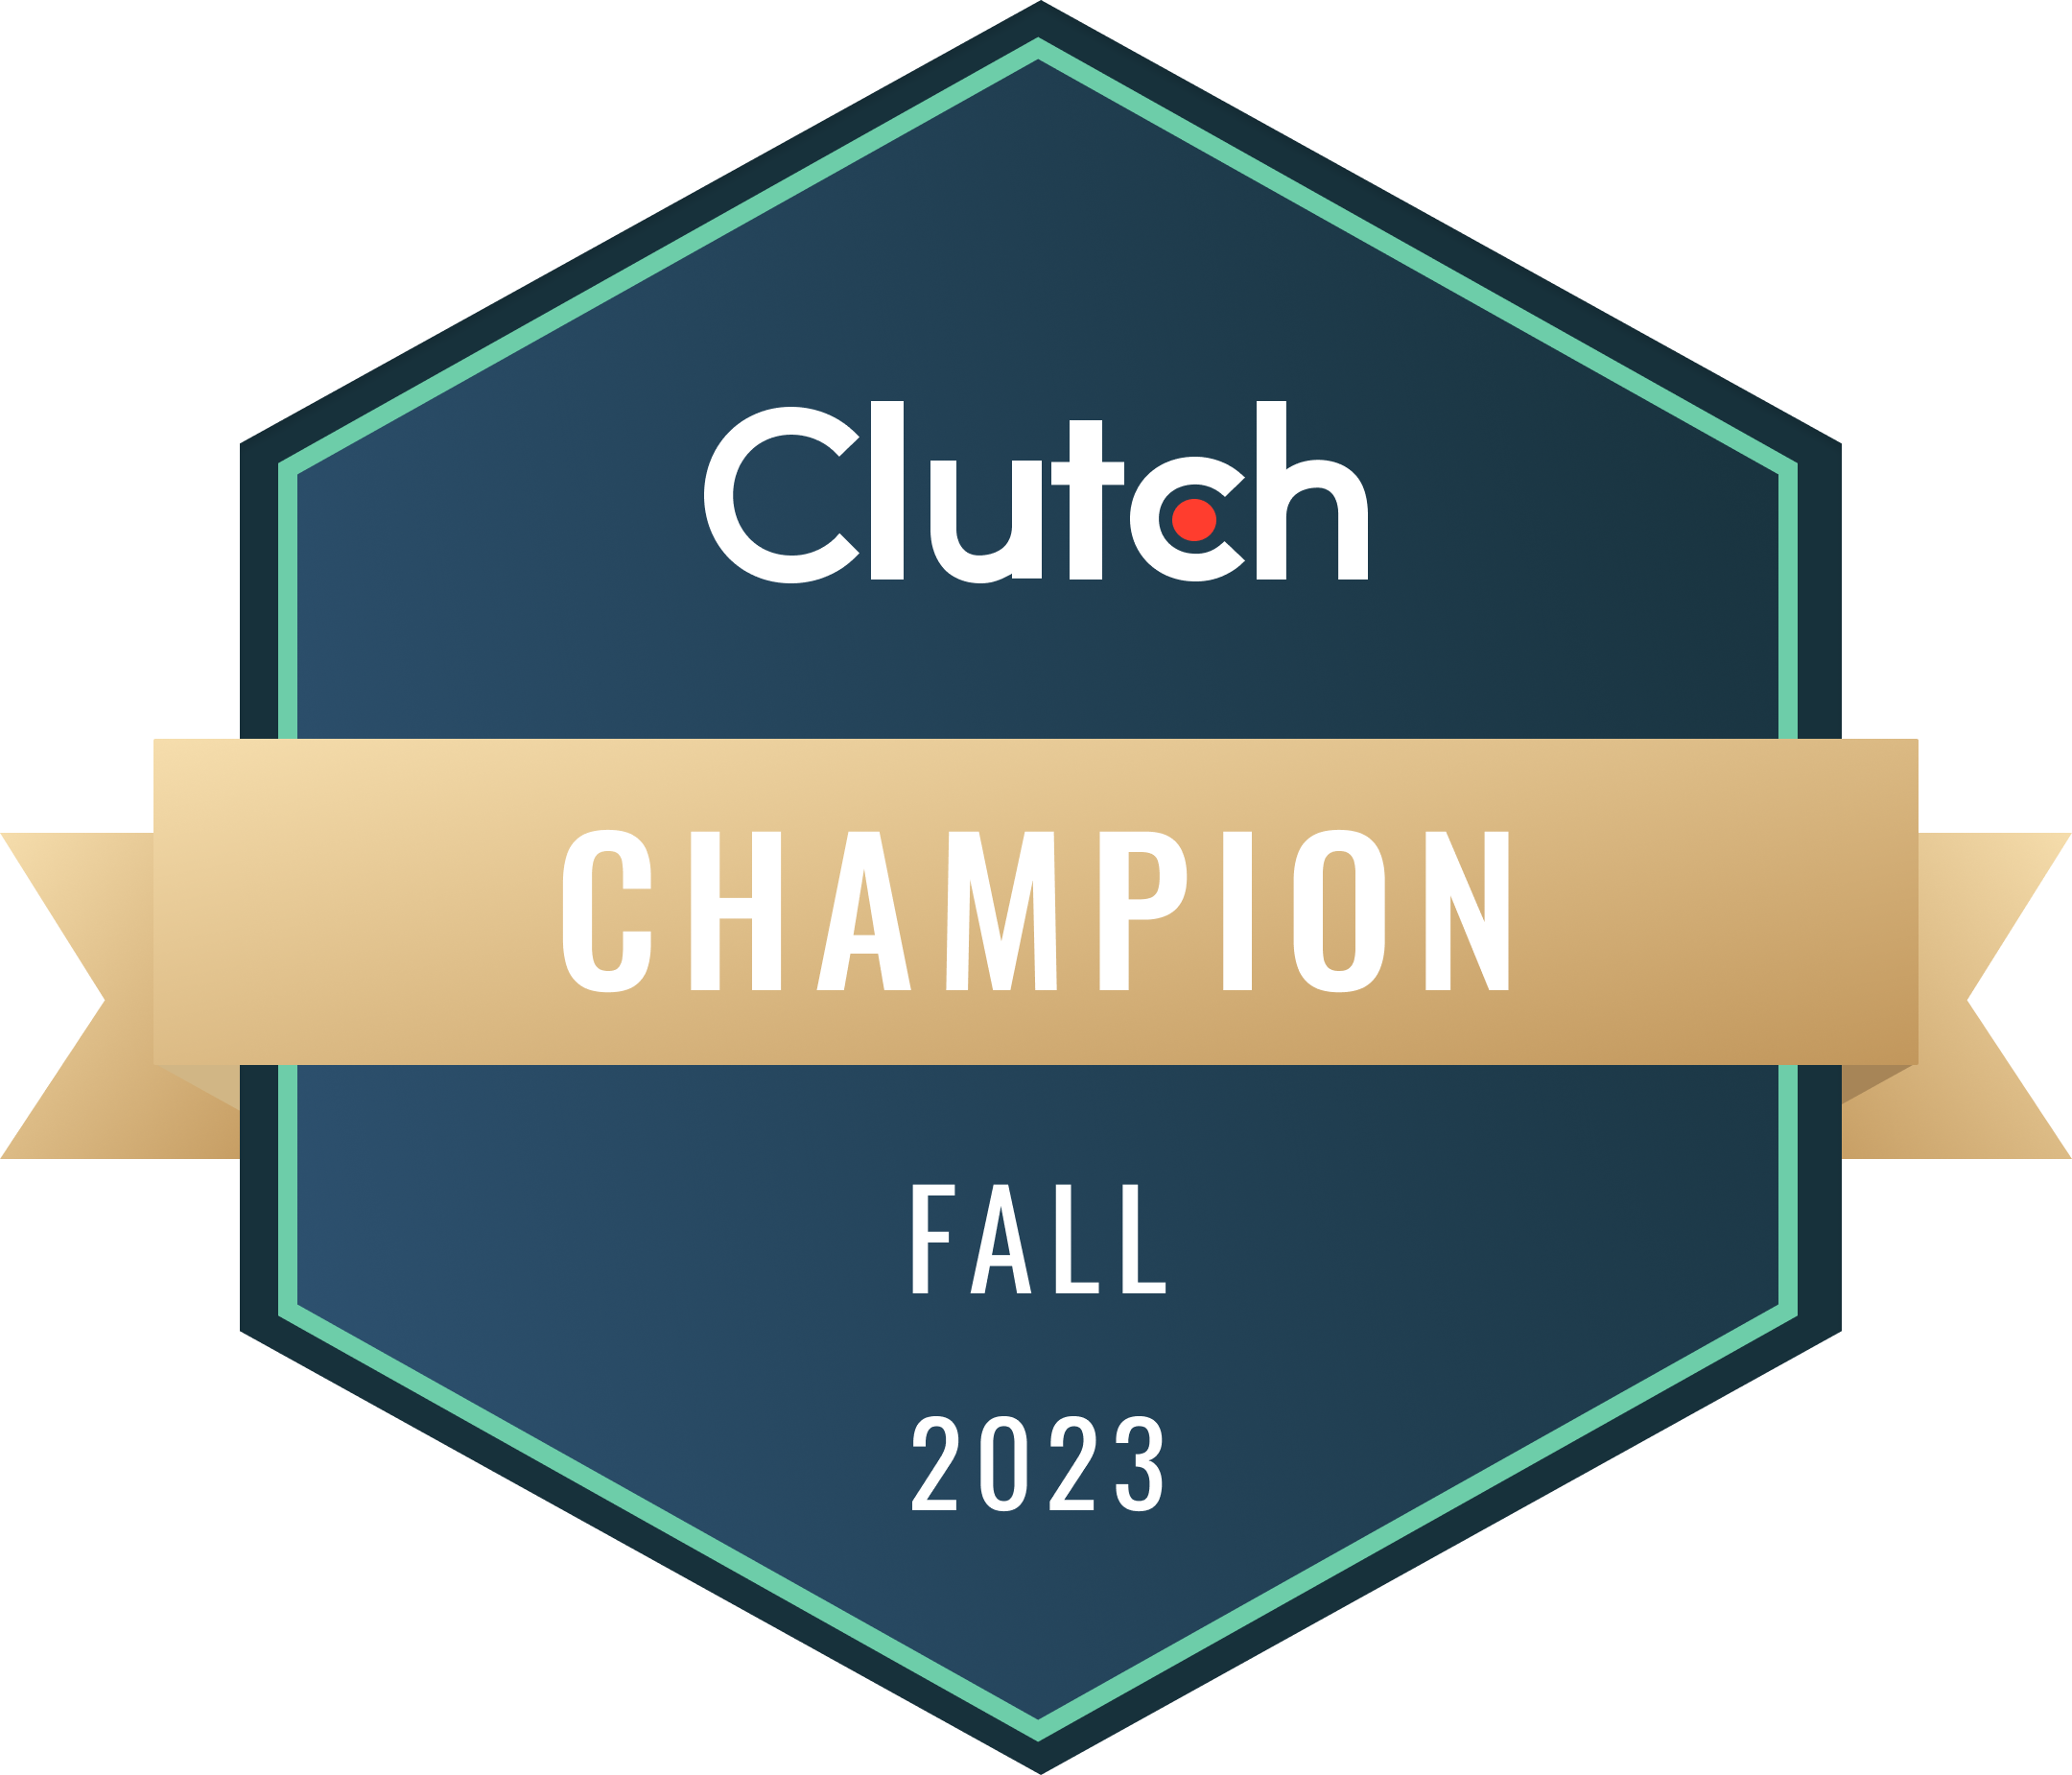 Clutch UX certificate